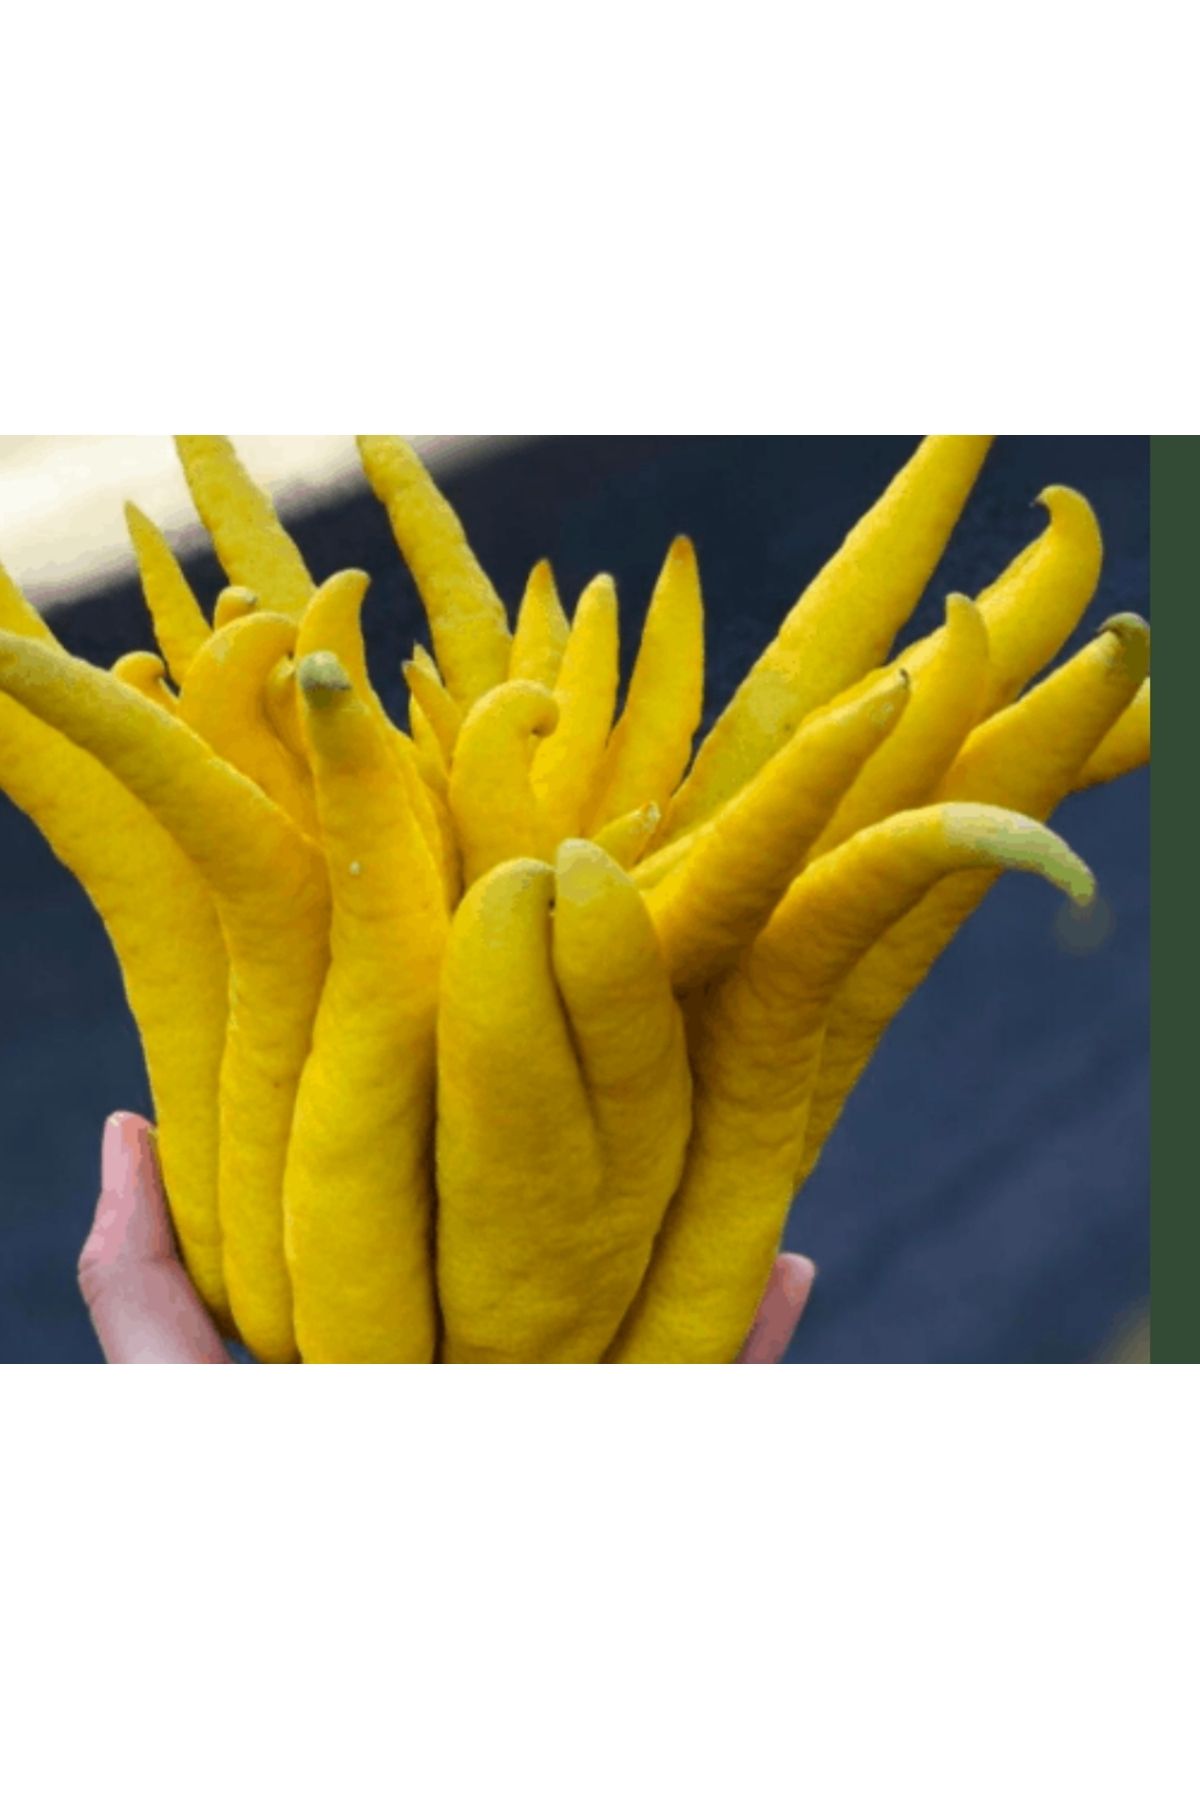 AYDOĞDU Tüplü Buda'nın eli limon fidanı 3 yaş 1m